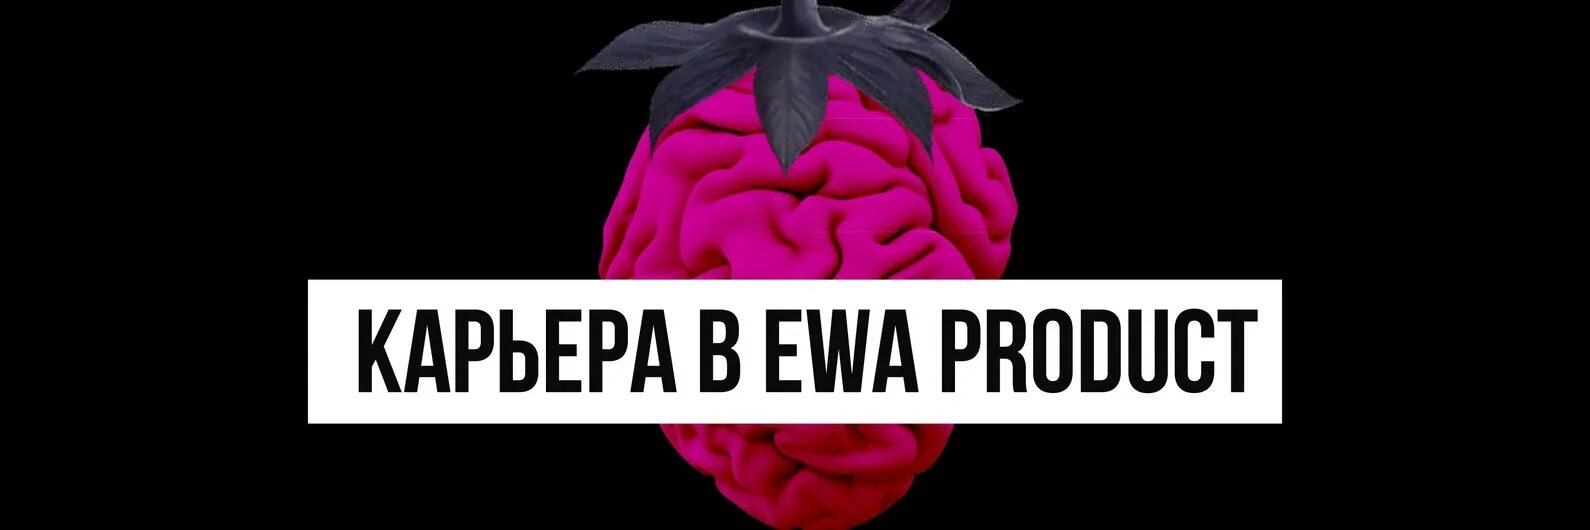 Эва продукт сетевая. Компания Ewa product. Ewa product сетевая. Ewa product логотип. Маркетинг компании Ewa product.